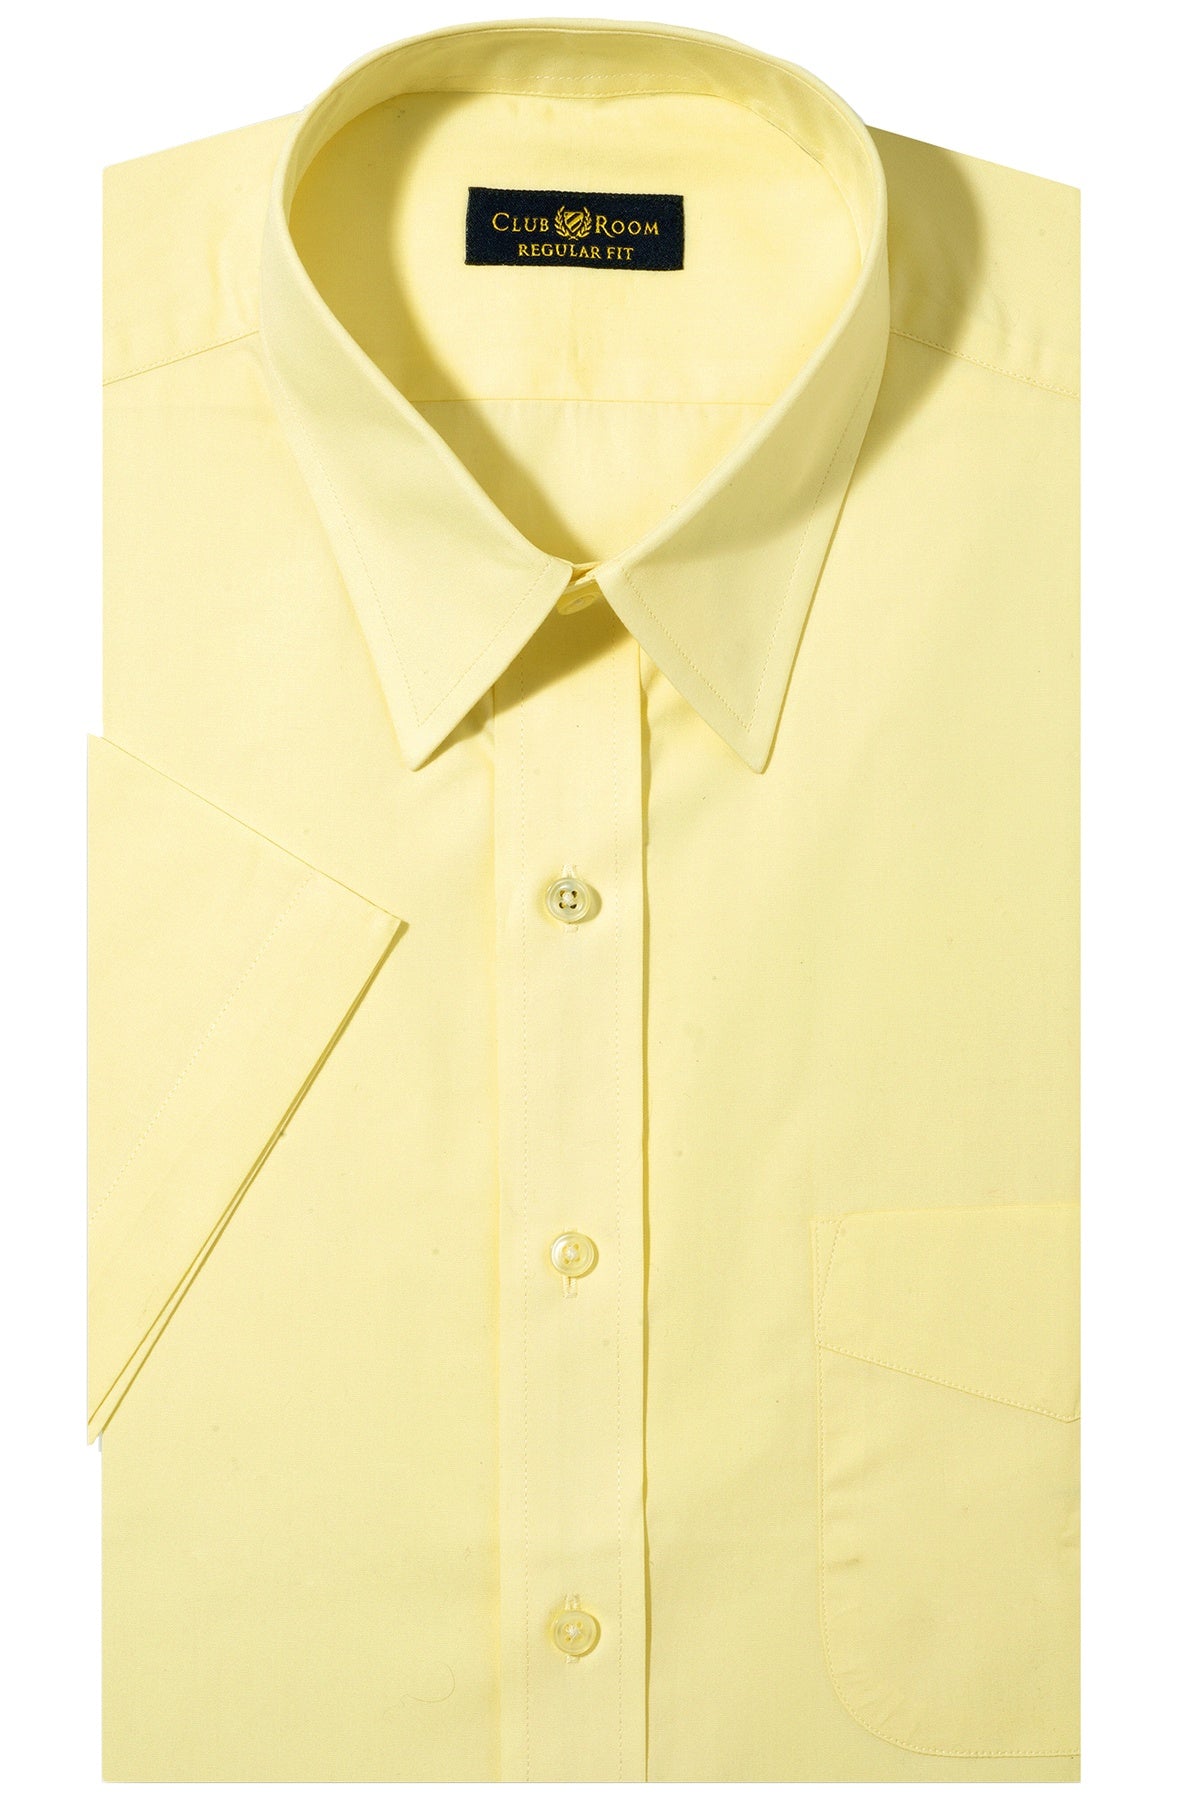 yellow short sleeve dress shirt